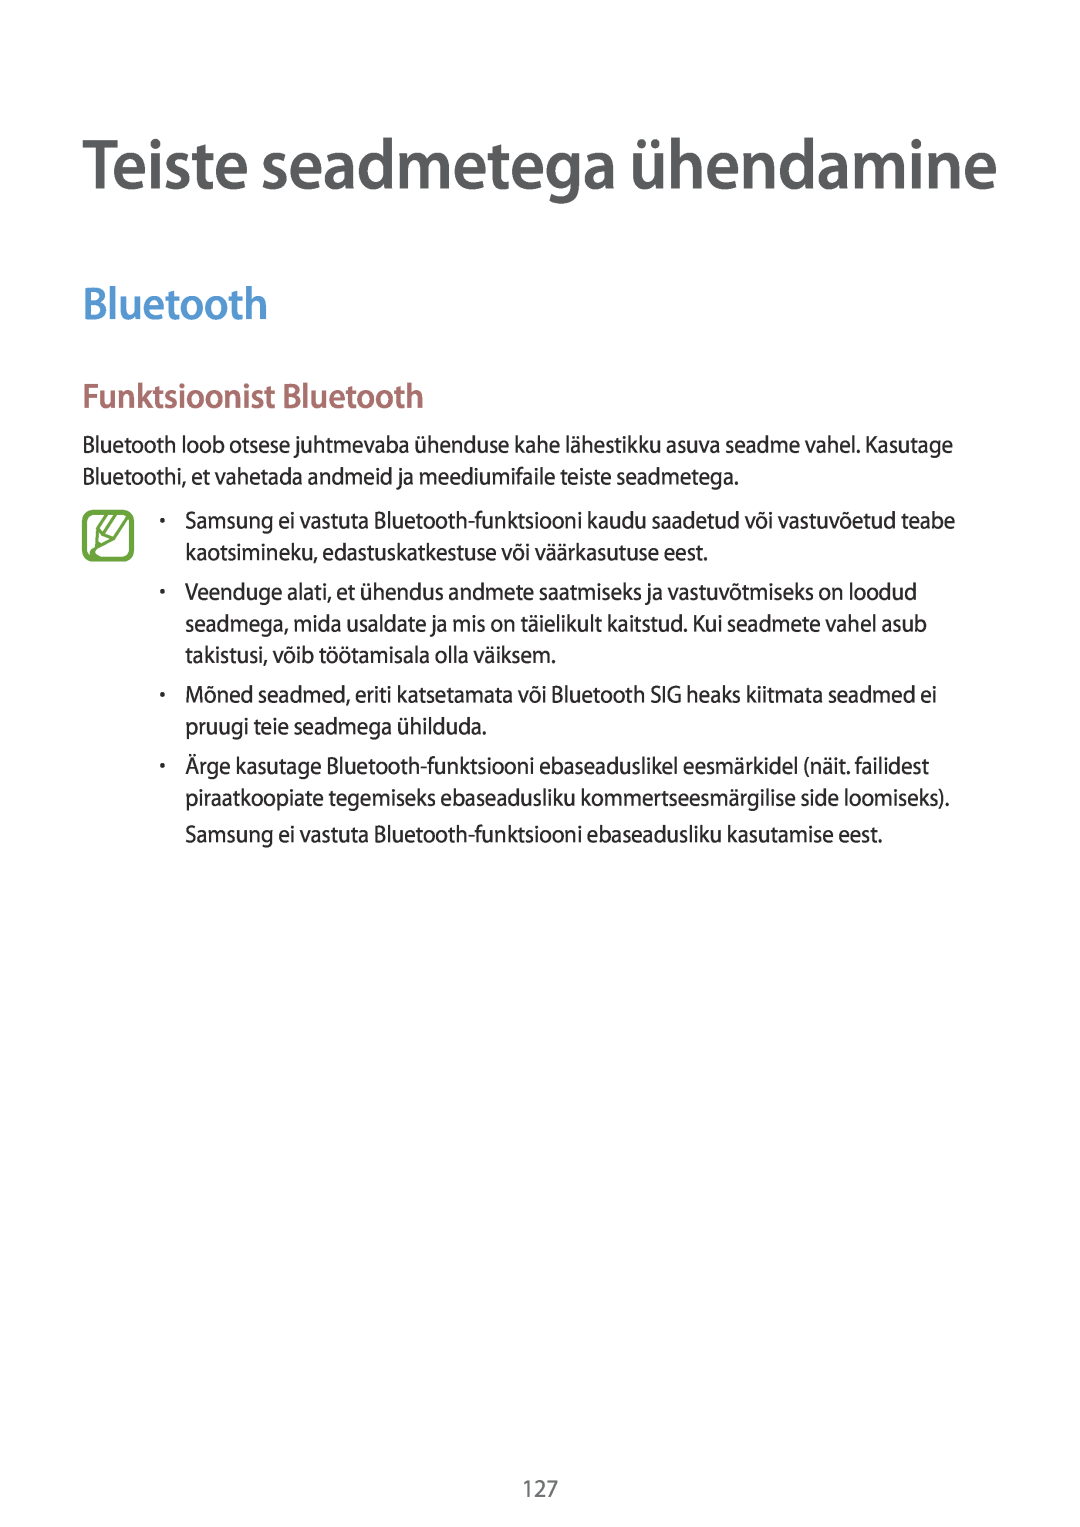 Samsung SM-T700NTSASEB, SM-T700NZWASEB manual Funktsioonist Bluetooth, Teiste seadmetega ühendamine 